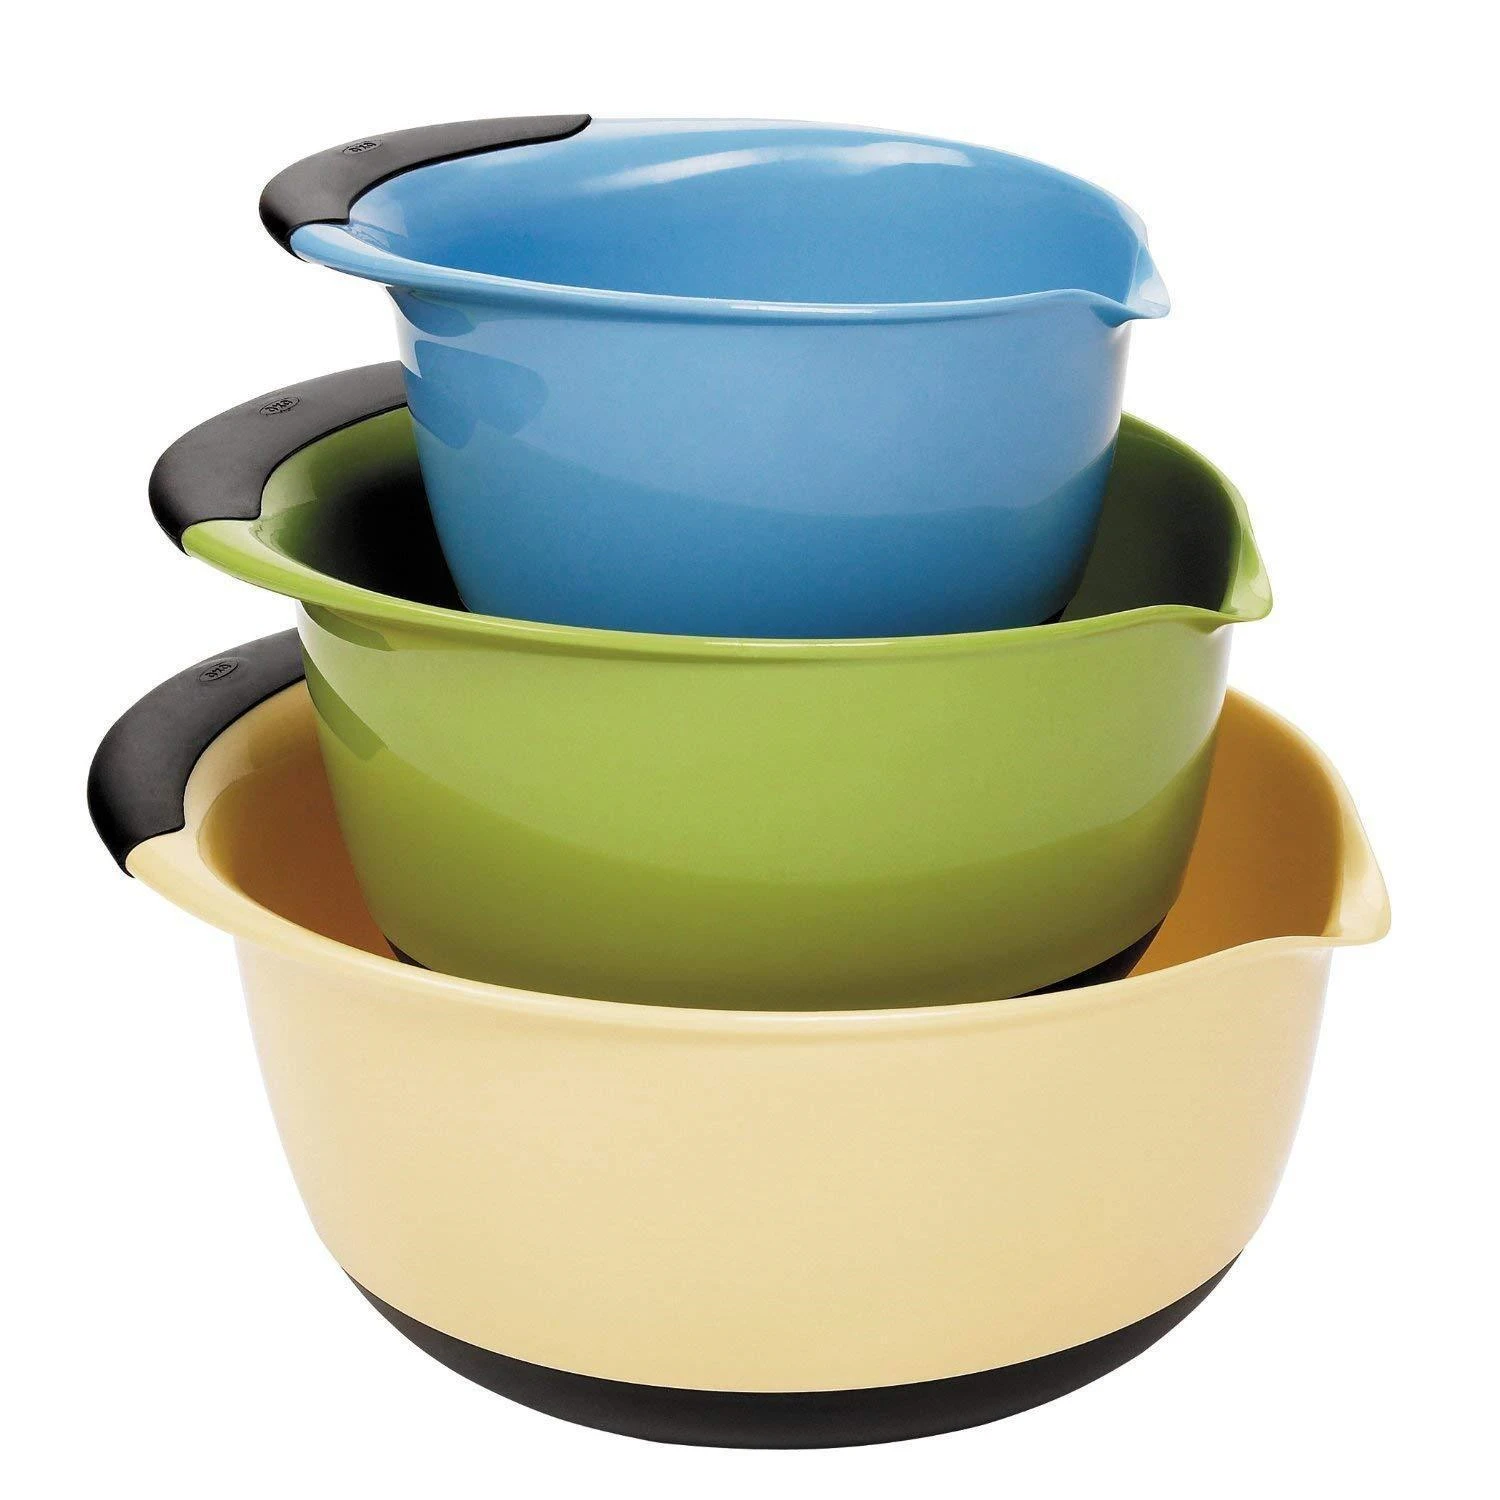 Set of 3 Handled Bowls